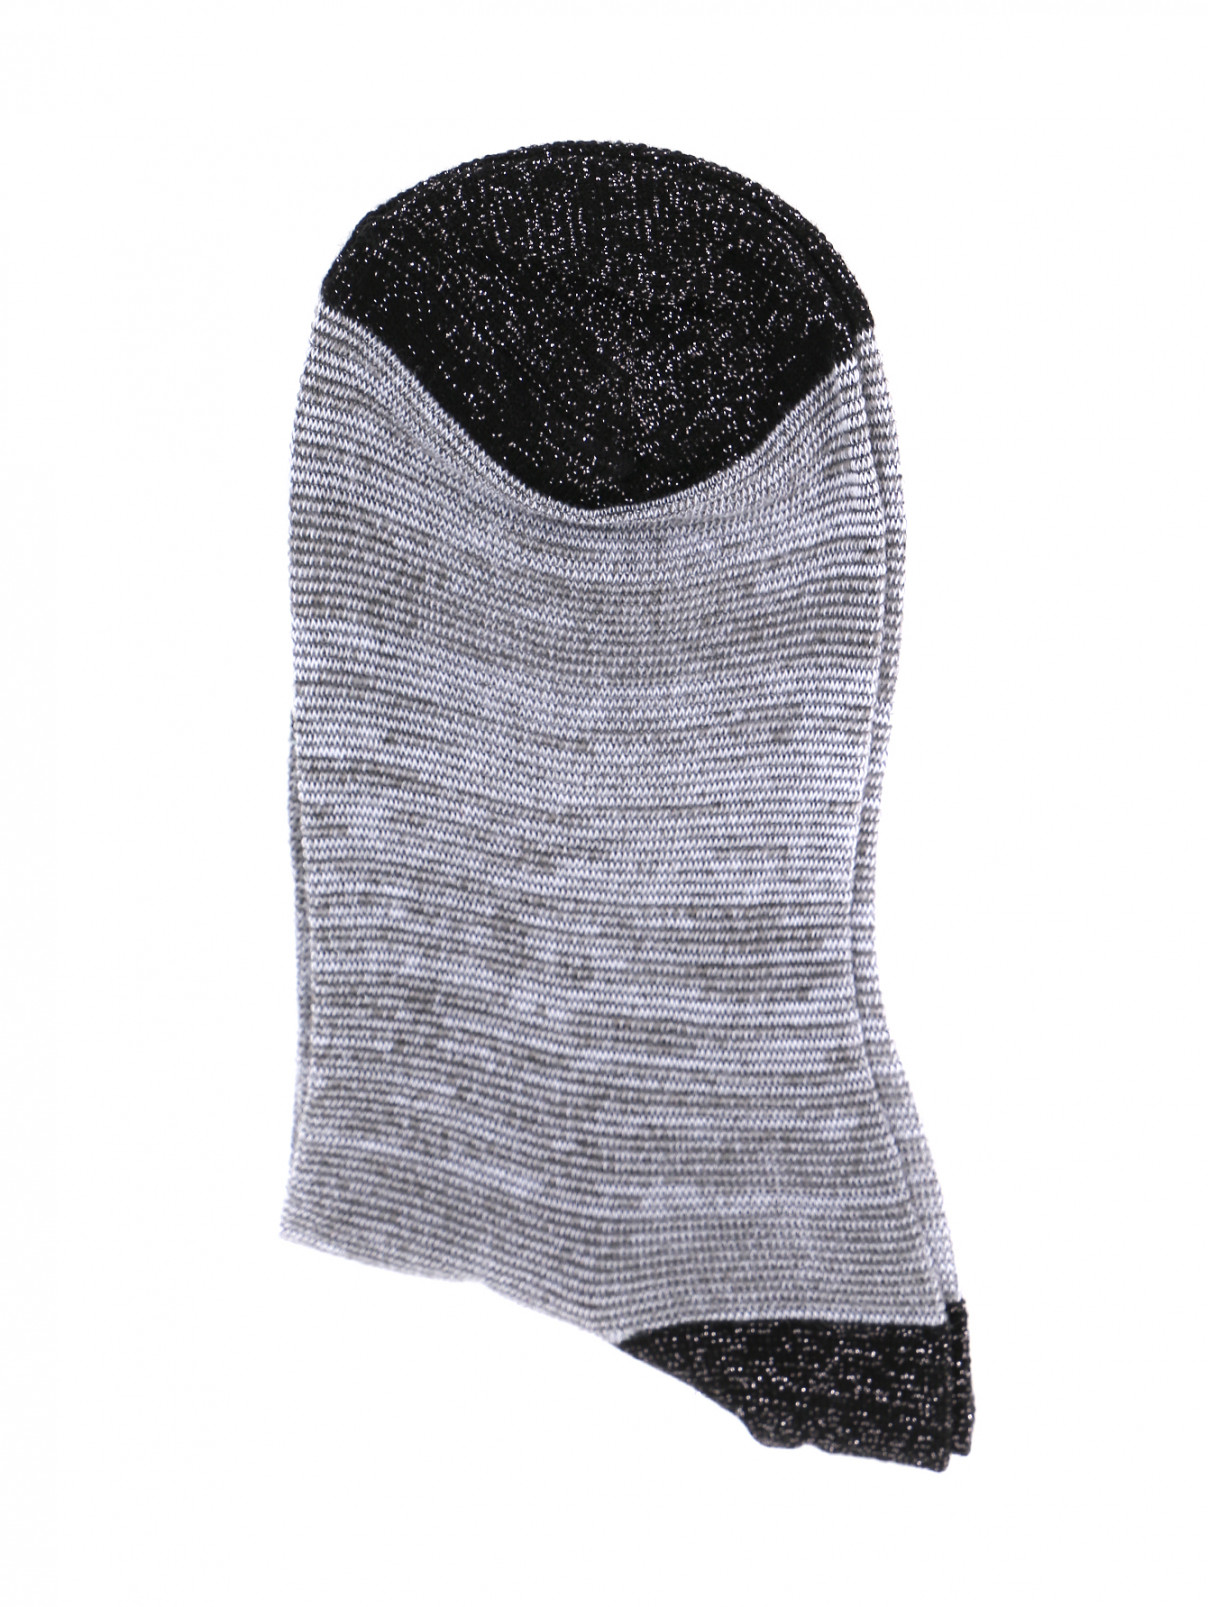 Носки из хлопка ALTO MILANO  –  Общий вид  – Цвет:  Серый